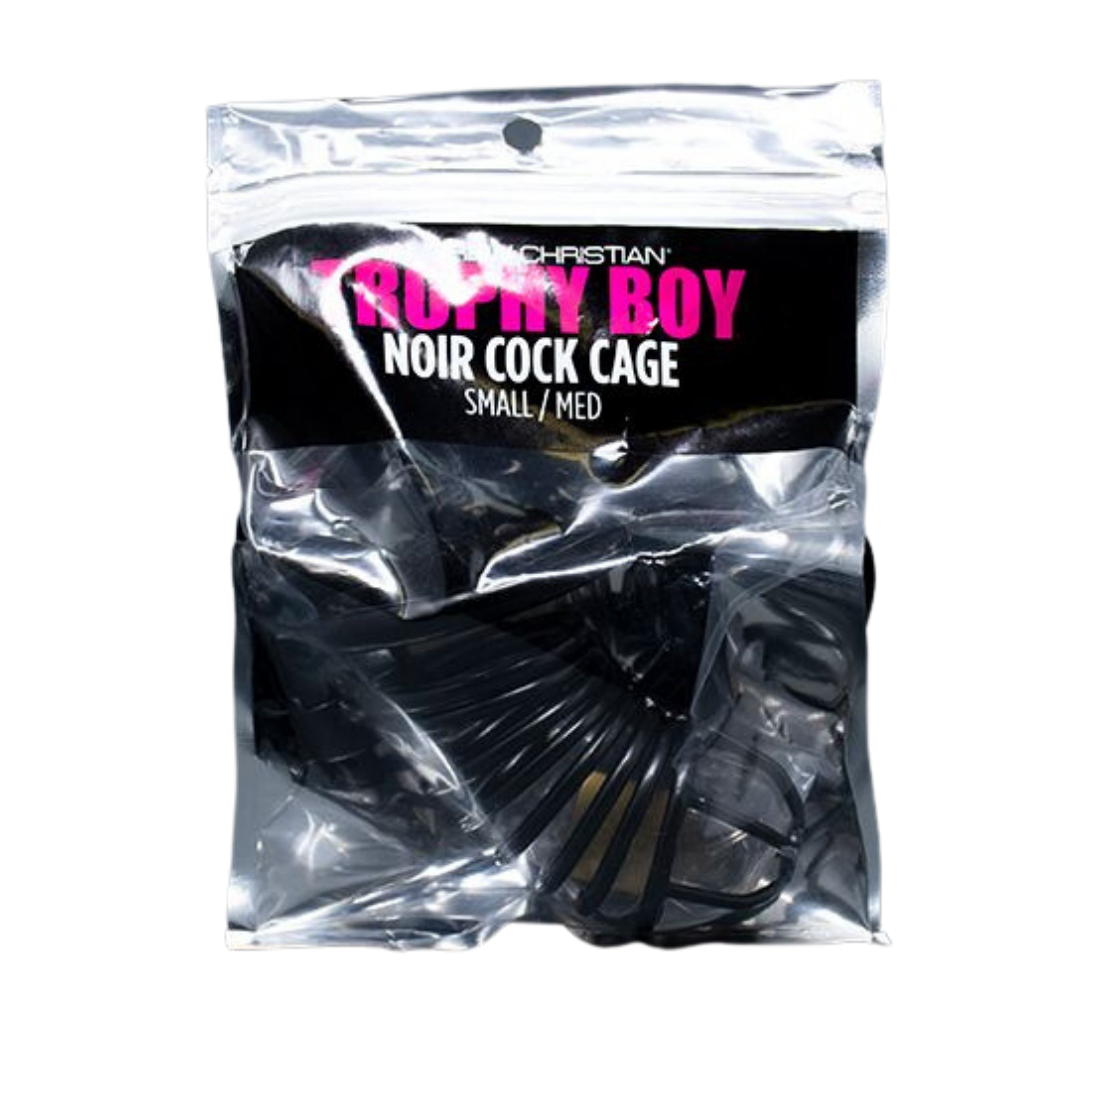 Zwarte chastity cage, ook peniskooi genoemd, voor een kleine tot middelgrote penis, ontworpen door het bekende Amerikaanse gay merk Andrew Christian, te koop bij Flavourez.